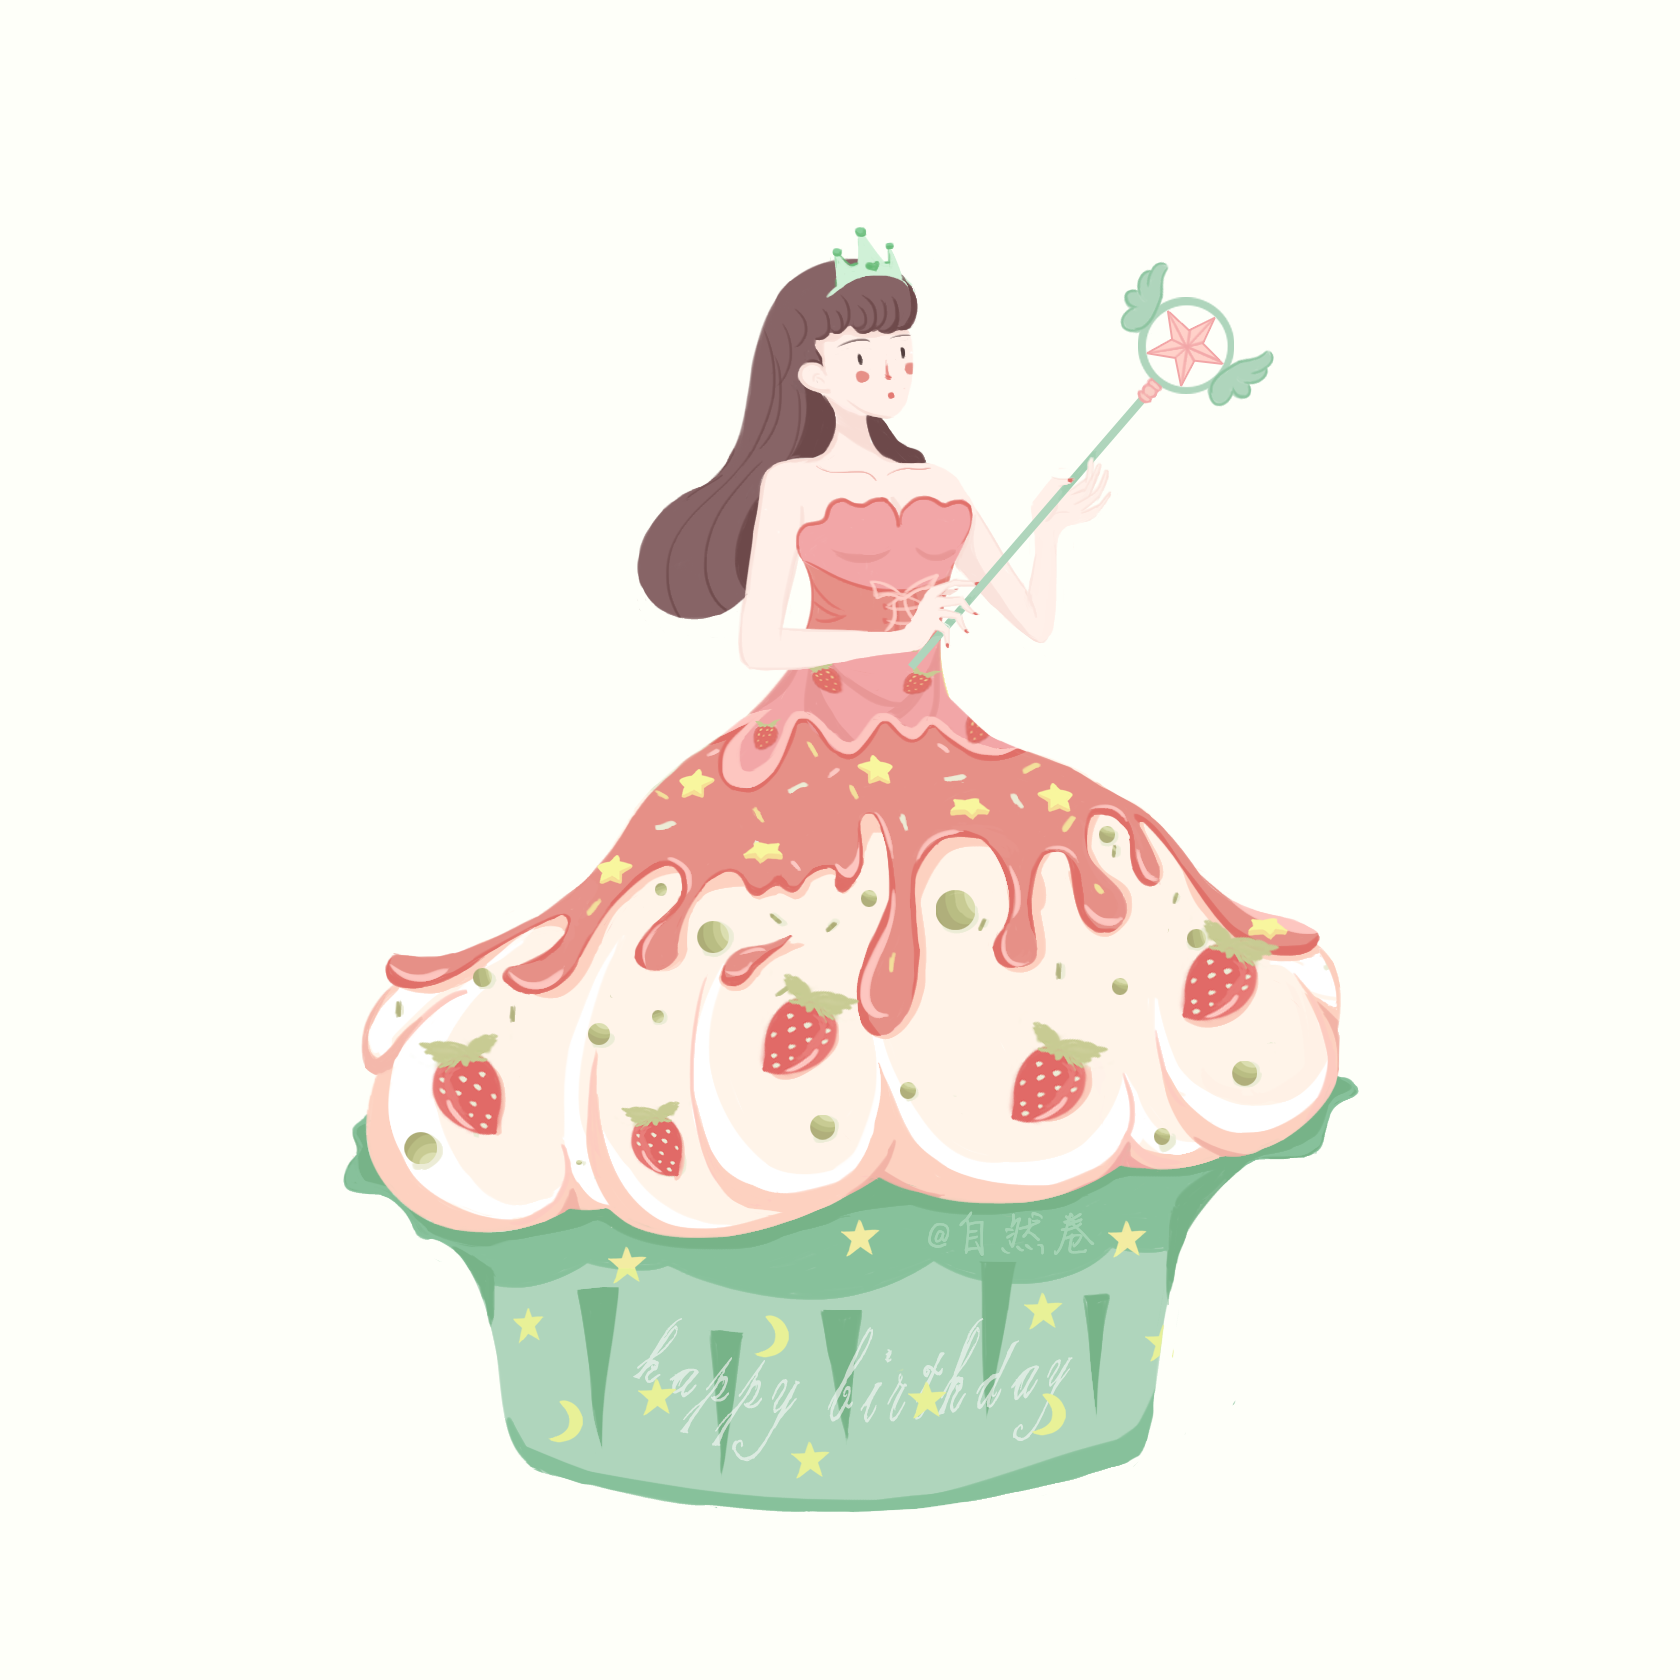 彩虹芭比公主蛋糕怎么做_彩虹芭比公主蛋糕的做法_豆果美食